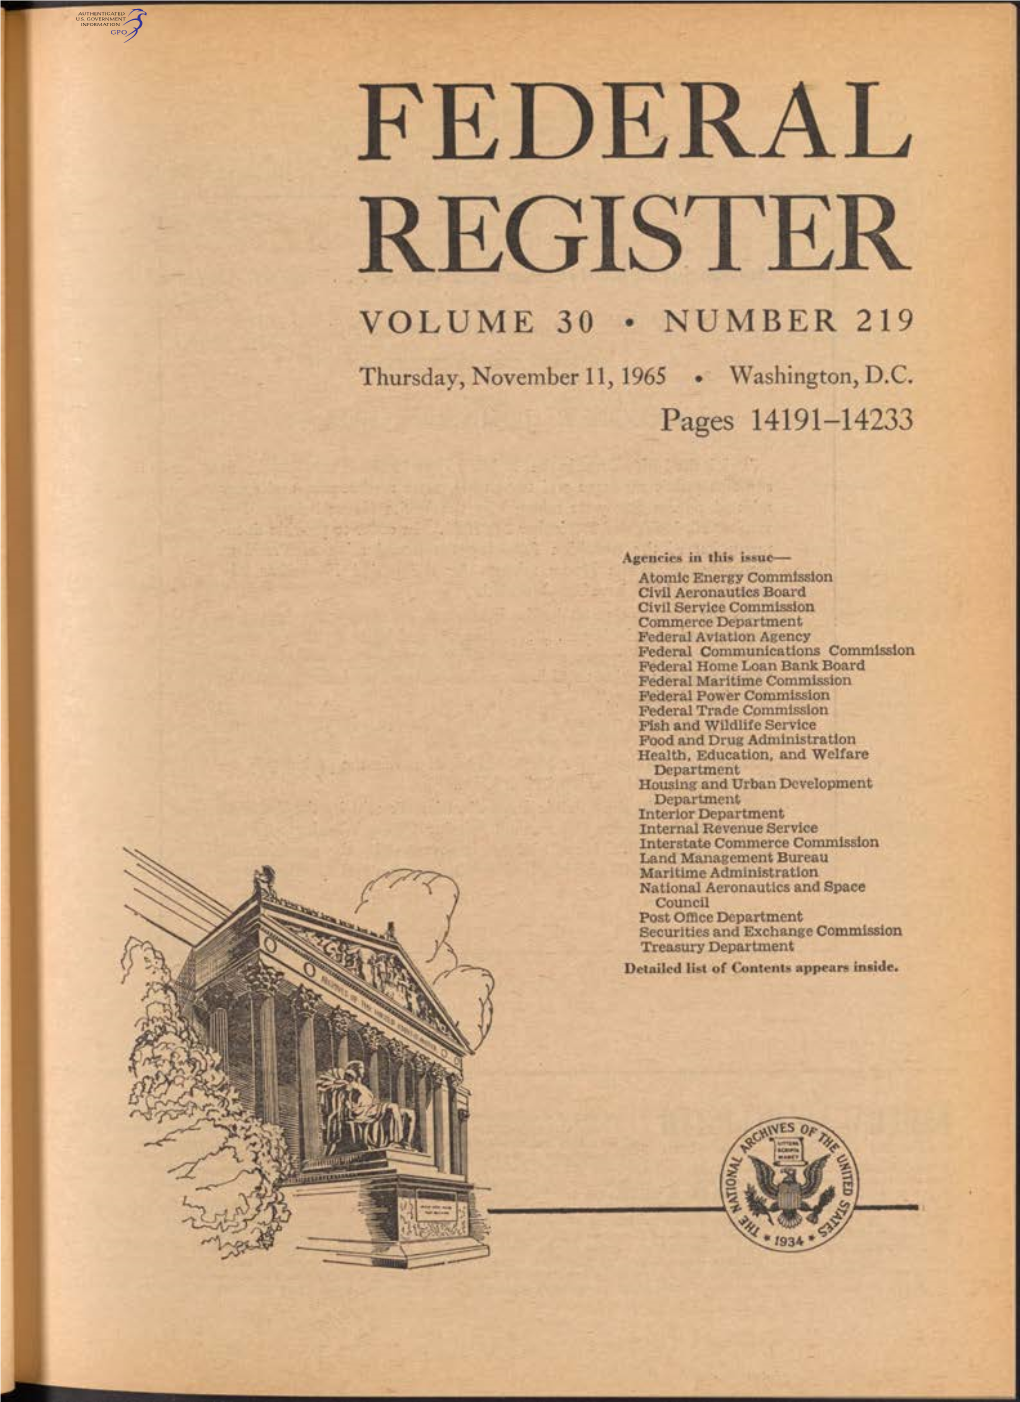 Federal Register Volume 30 • Number 219